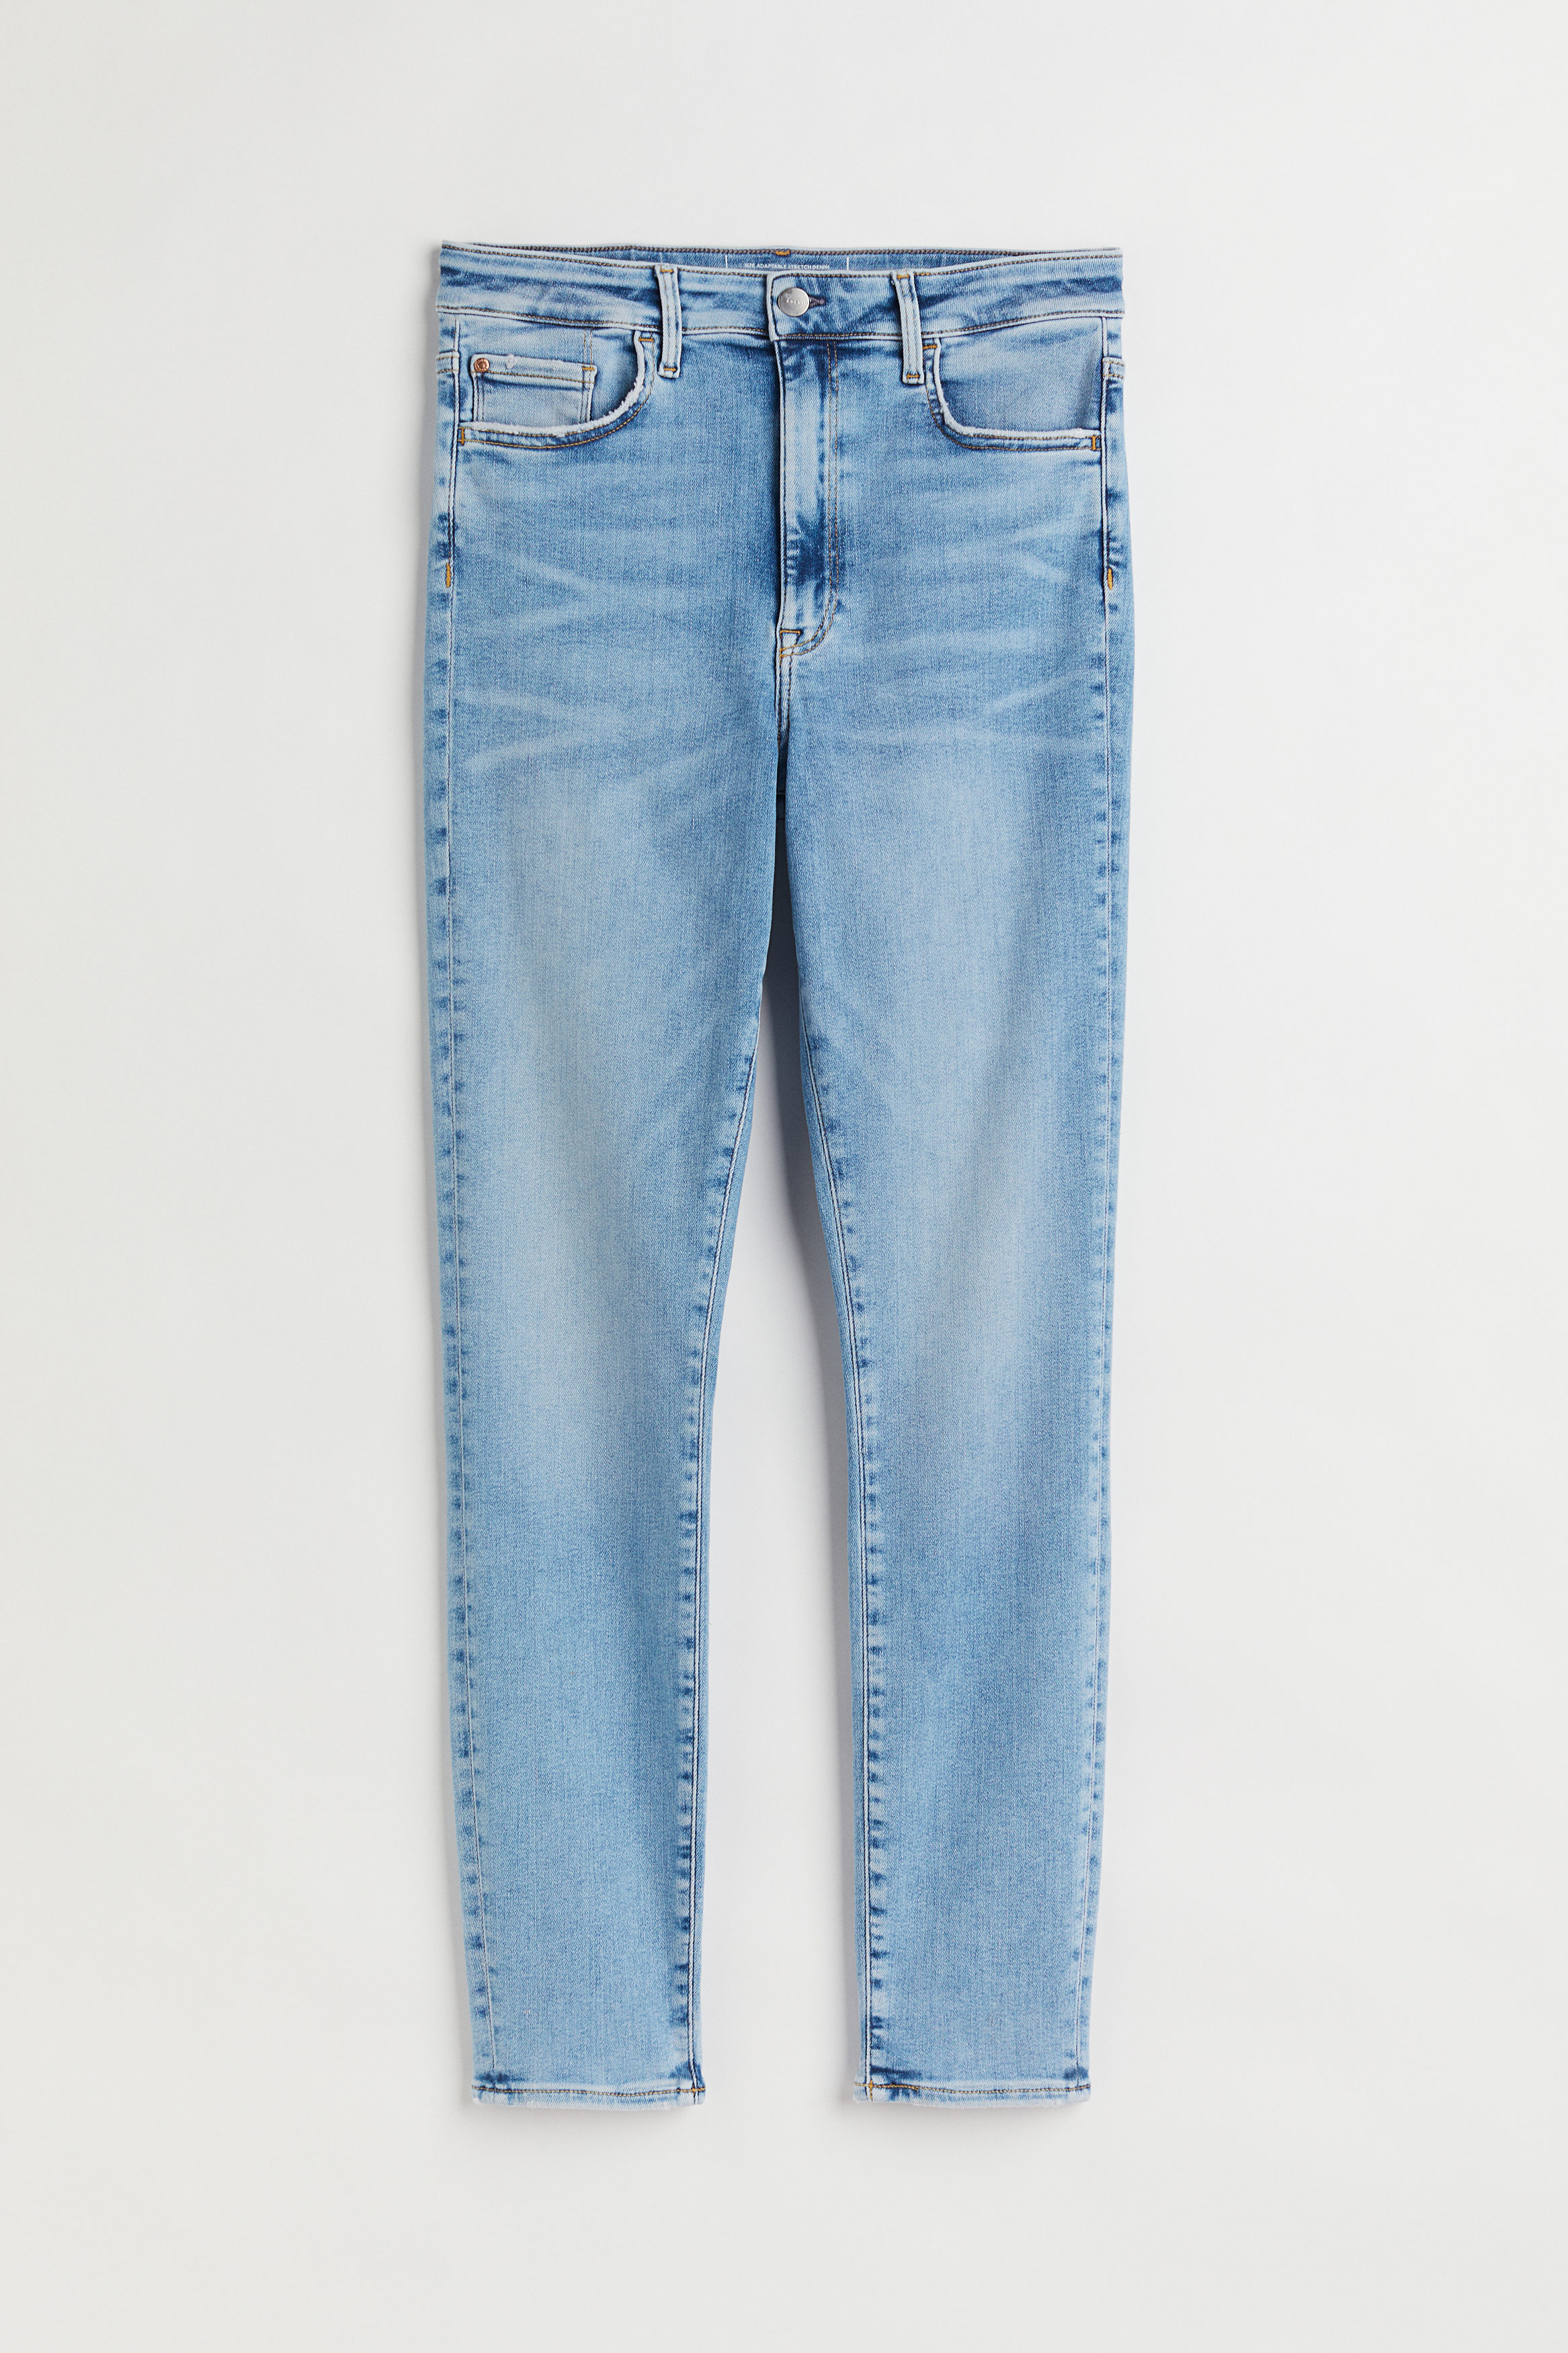 Billede af H&m+ True To You Skinny High Jeans Lys Denimblå, jeans. Farve: Light denim blue 010 I størrelse 4XL